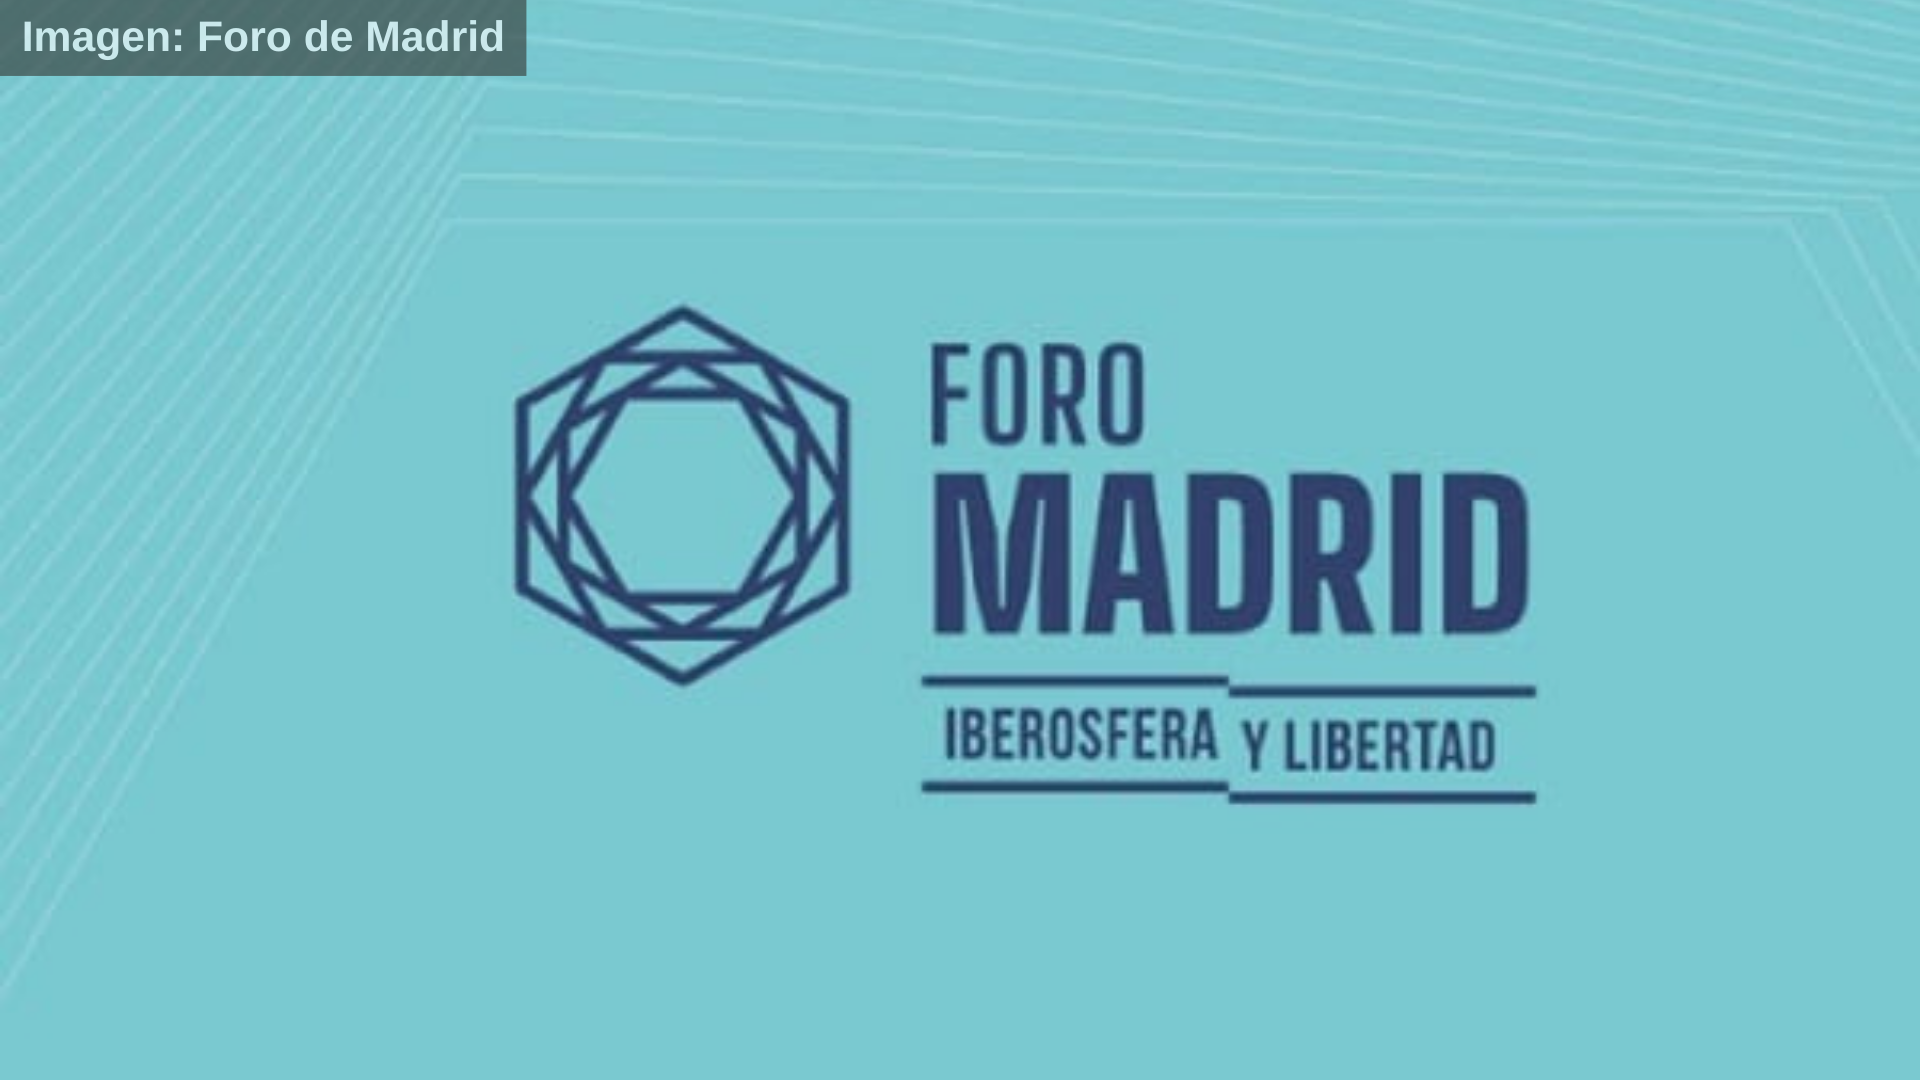 Vox y el Foro de Madrid